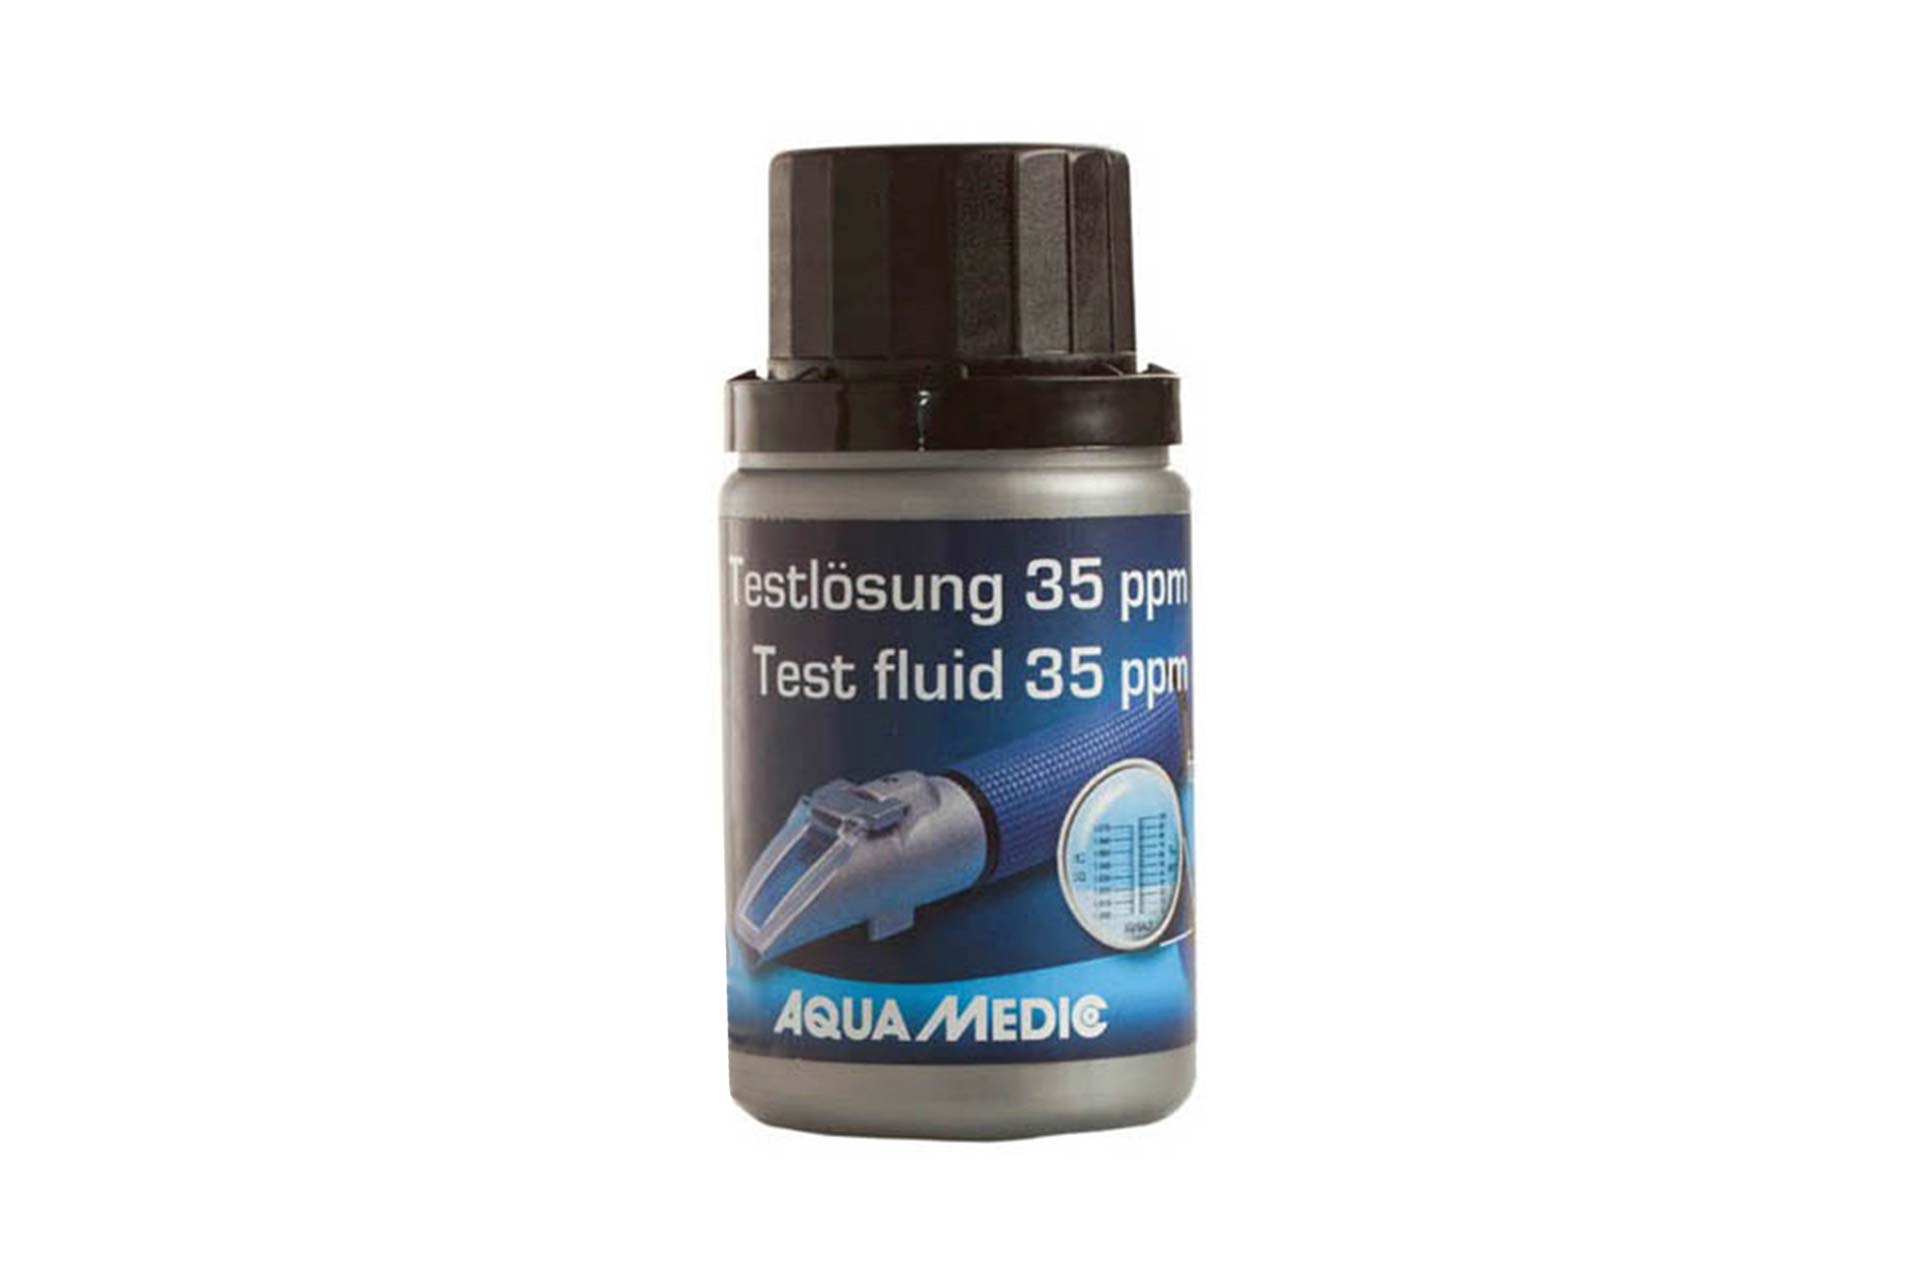 Aqua Medic Marin Control Calibration Solution 35 ppm 60 ml